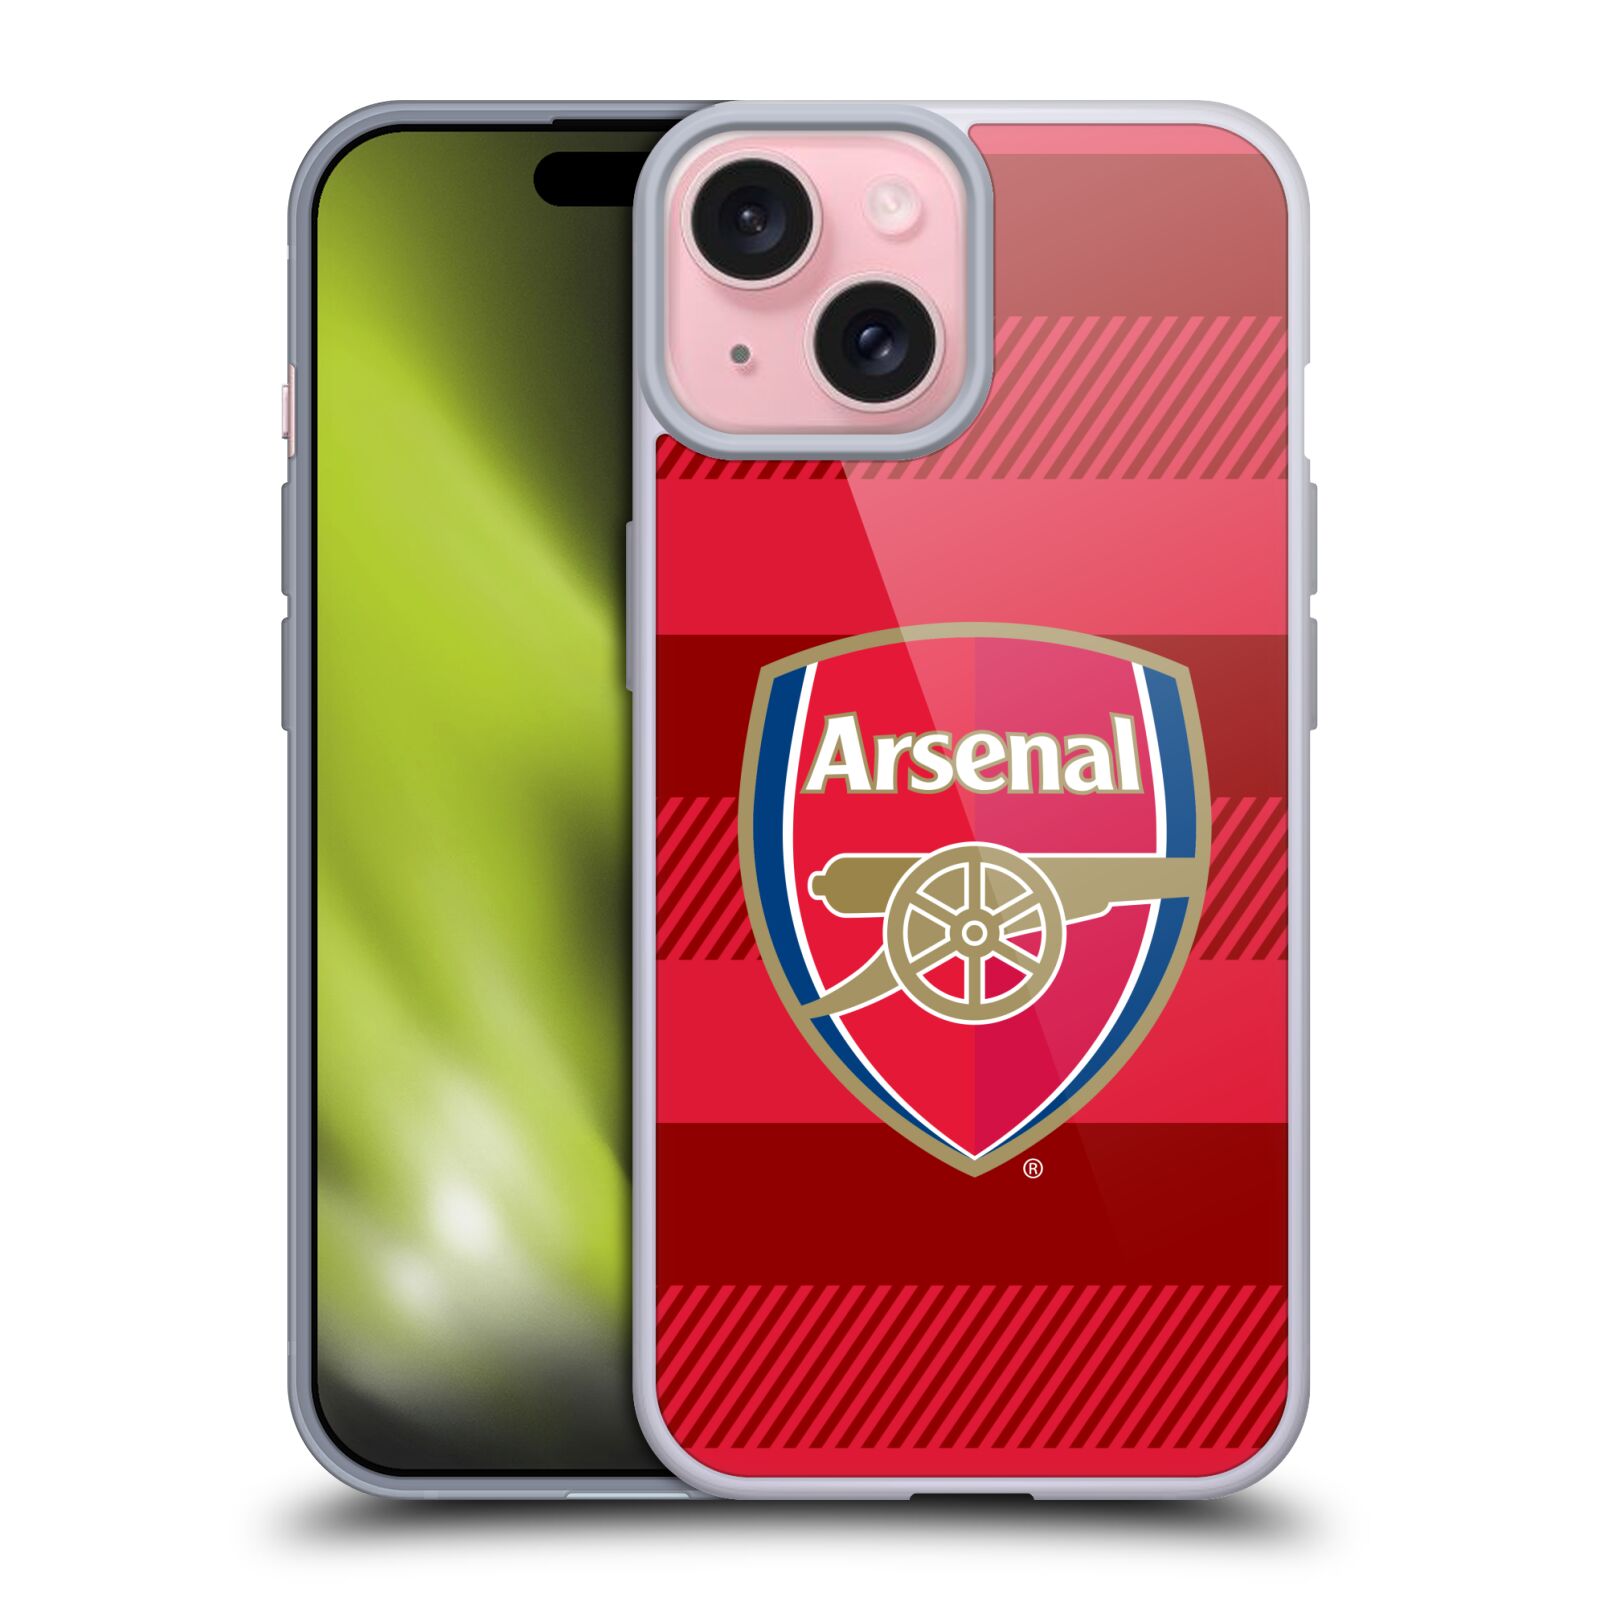 Silikonové lesklé pouzdro na mobil Apple iPhone 15 - Head Case - Arsenal FC - Logo s pruhy (Silikonový lesklý kryt, obal, pouzdro na mobilní telefon s motivem klubu Arsenal FC - Logo s pruhy pro Apple iPhone 15)